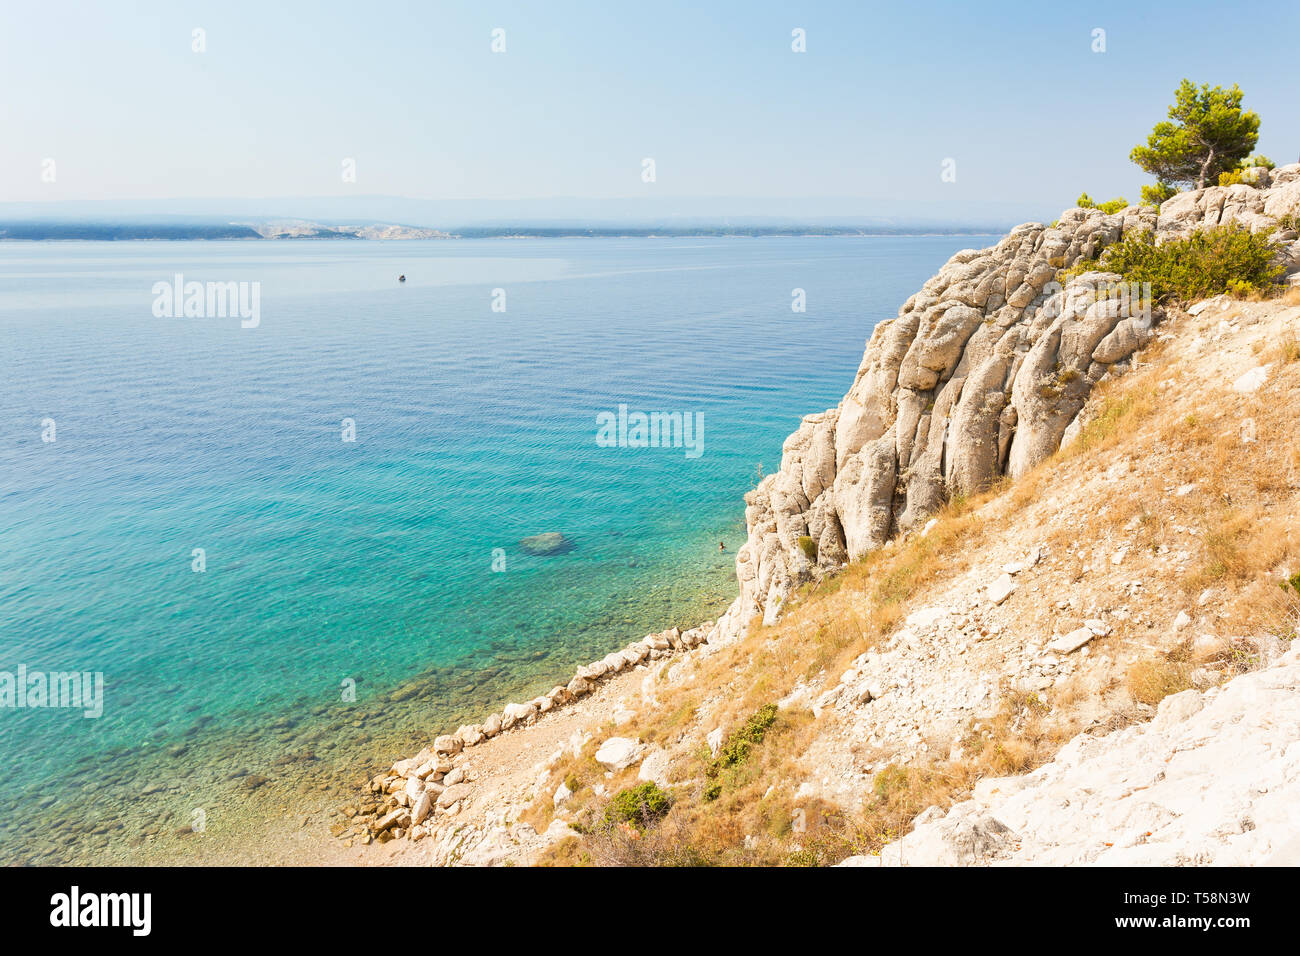 Stanici, Omis, Croazia, Europa - acque turchesi della bella spiaggia di Stanici Foto Stock